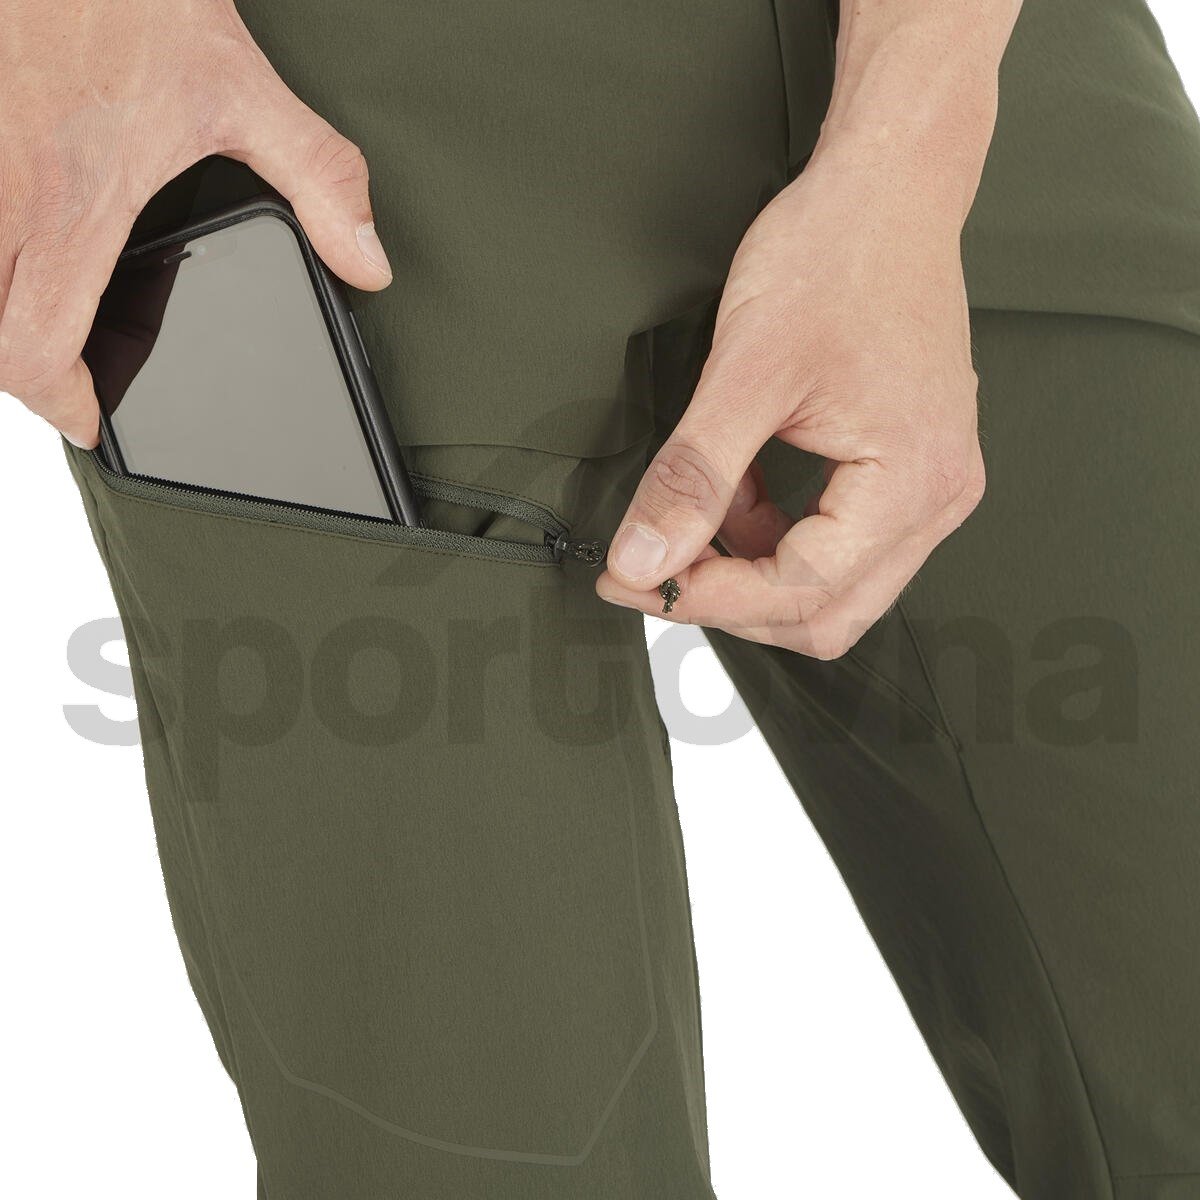 Kalhoty Salomon WAYFARER PANTS M - zelená (prodloužená délka)